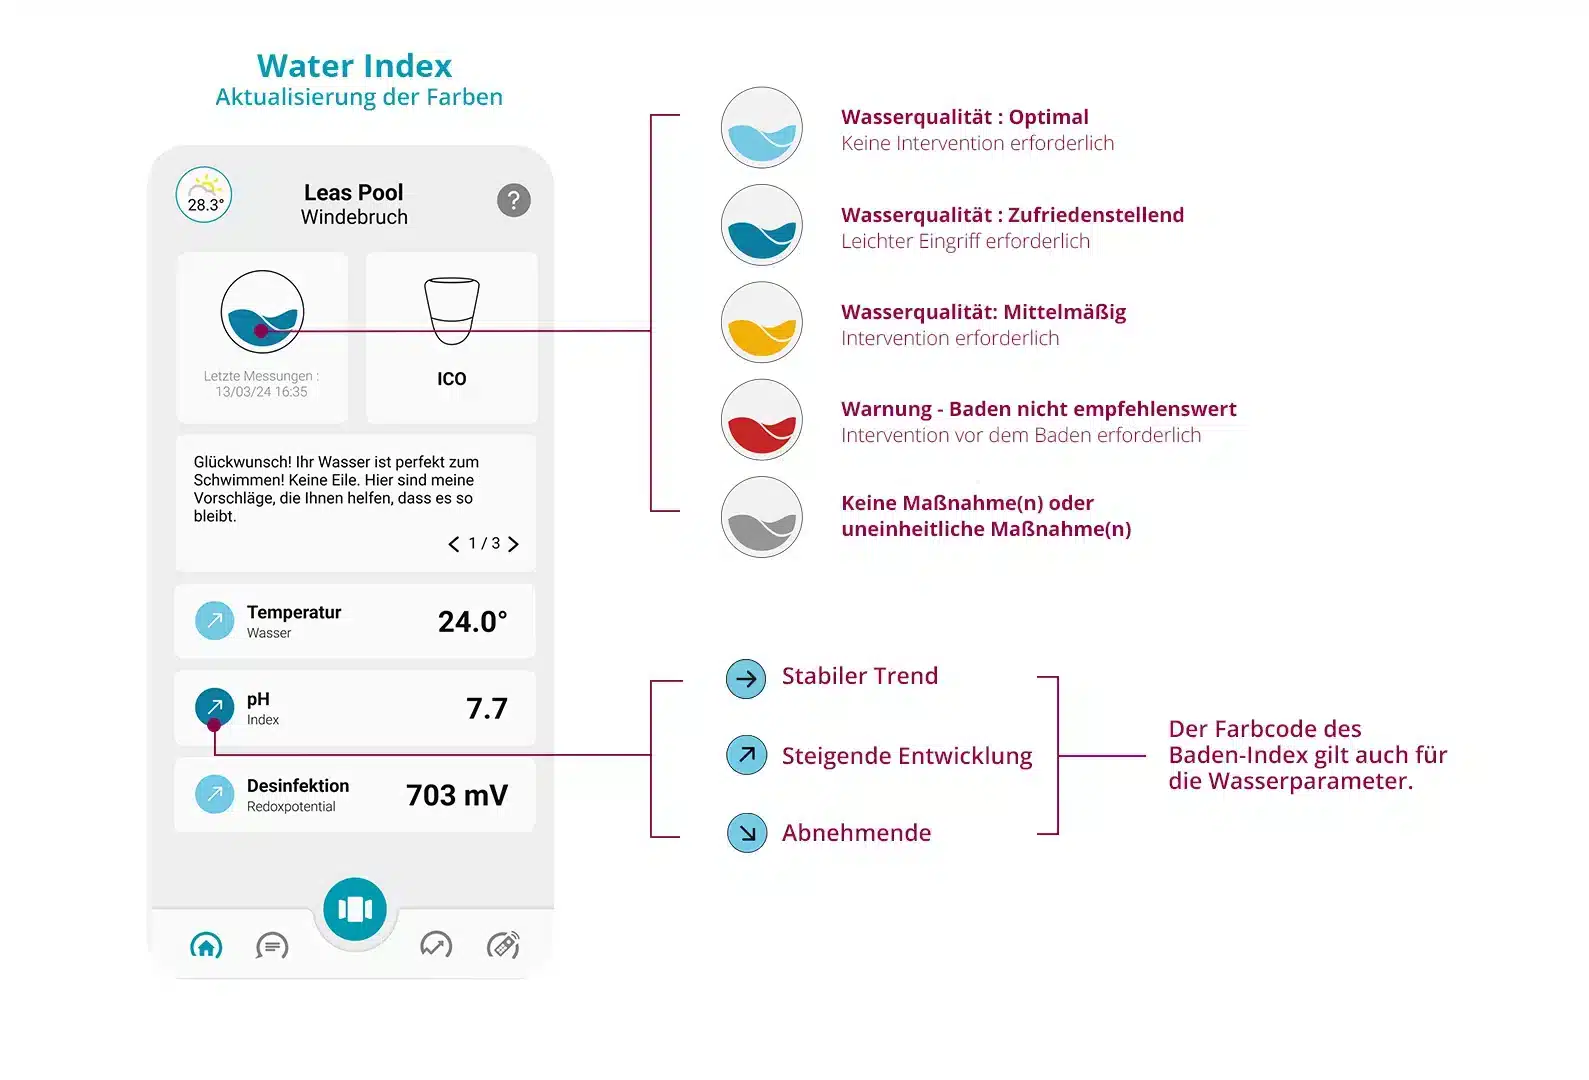 Schema der ico-Anwendung, das die 5 Farben, aus denen sich der Wasserindex zusammensetzt, sowie die 3 möglichen Trends erklärt